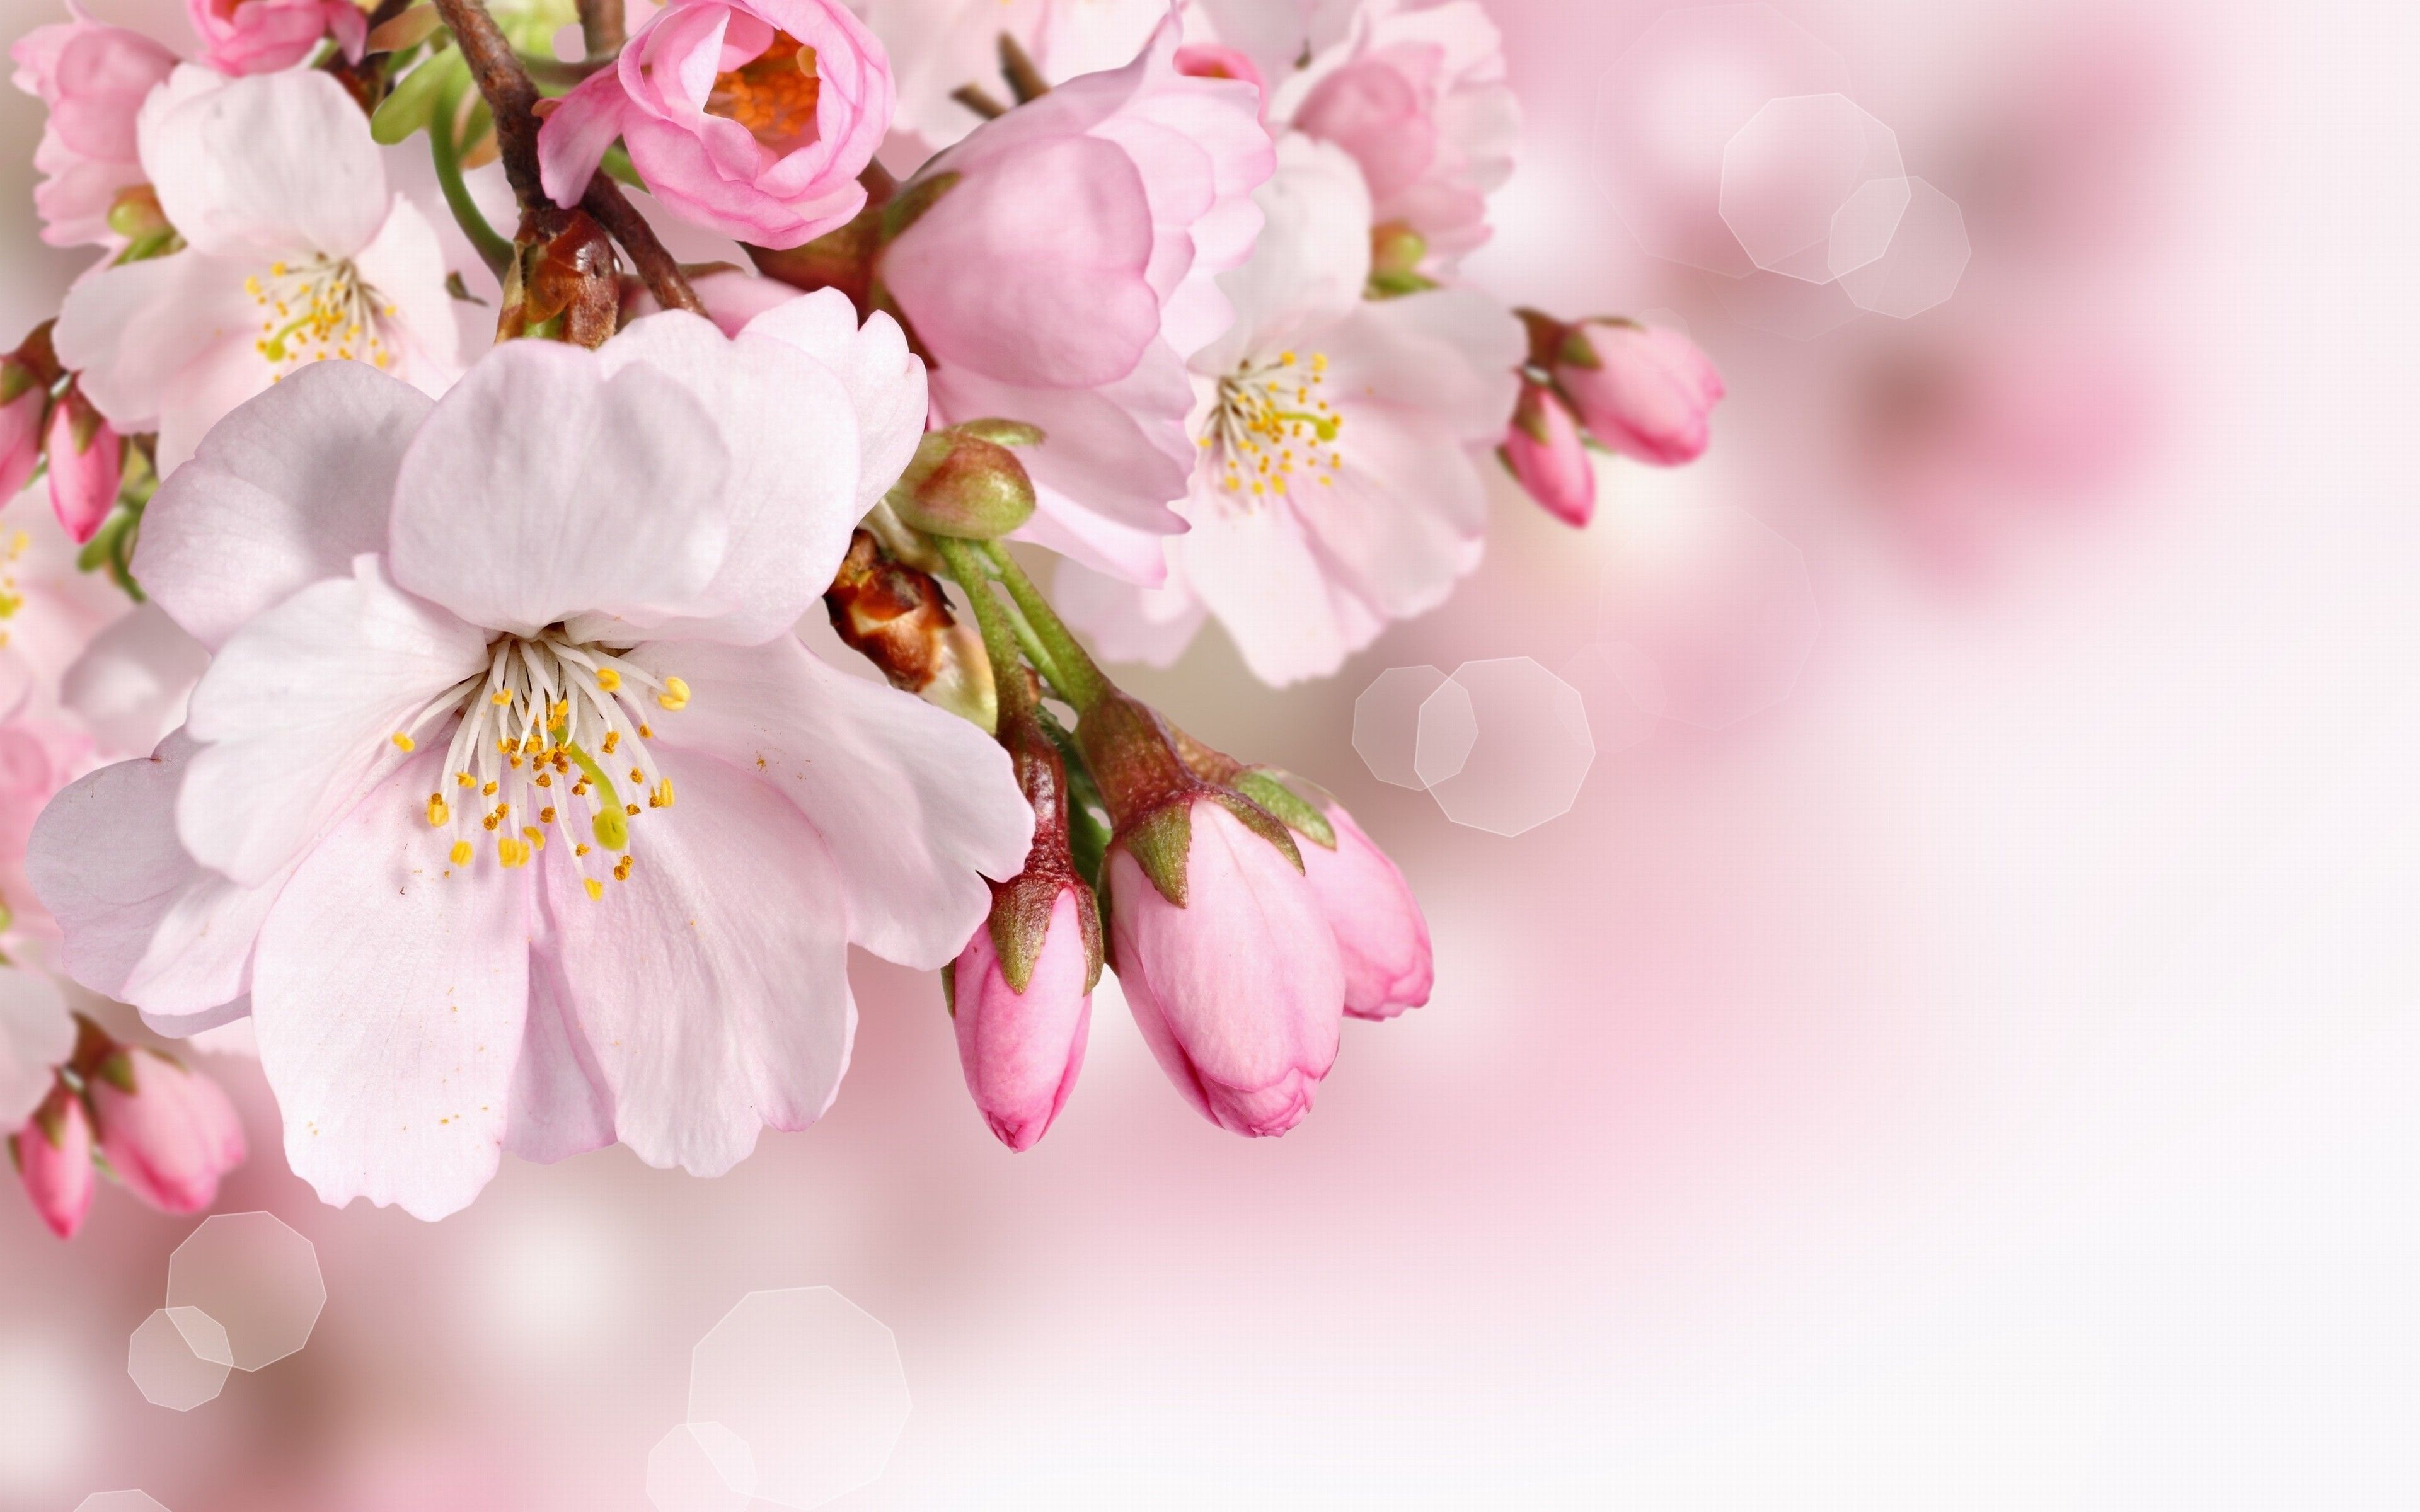 Spring Flowers Wallpaper Phone Yodobi. Spring flowers background, Spring flowers wallpaper, Pink spring flowers